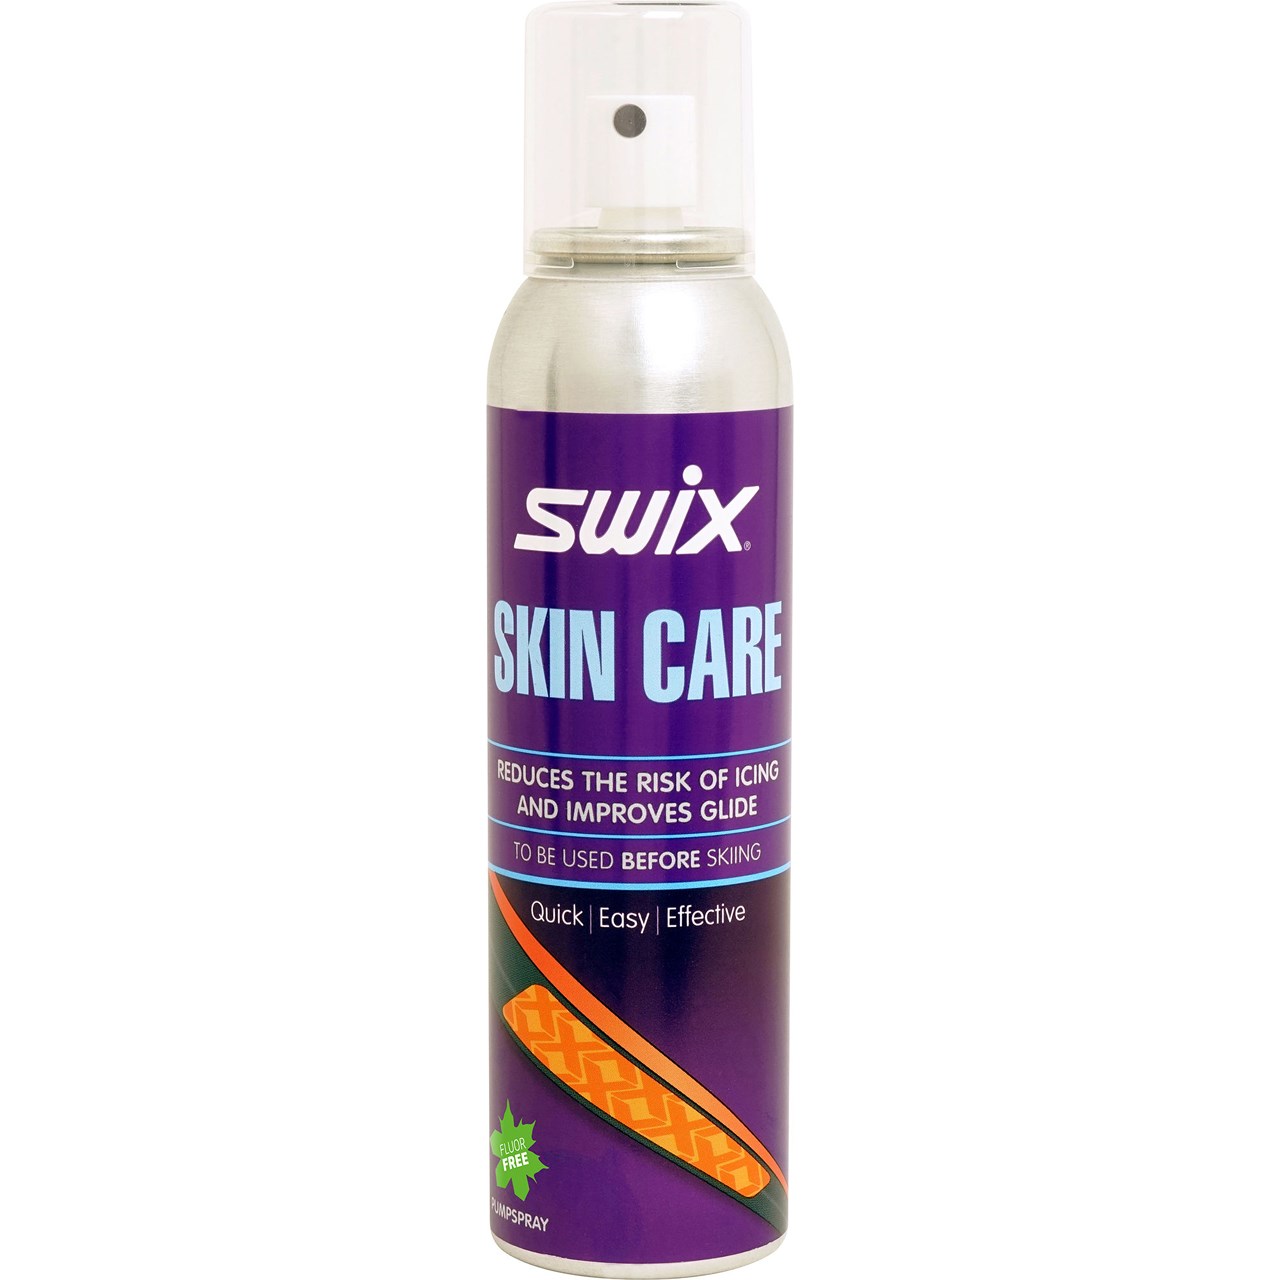 Skin care spray